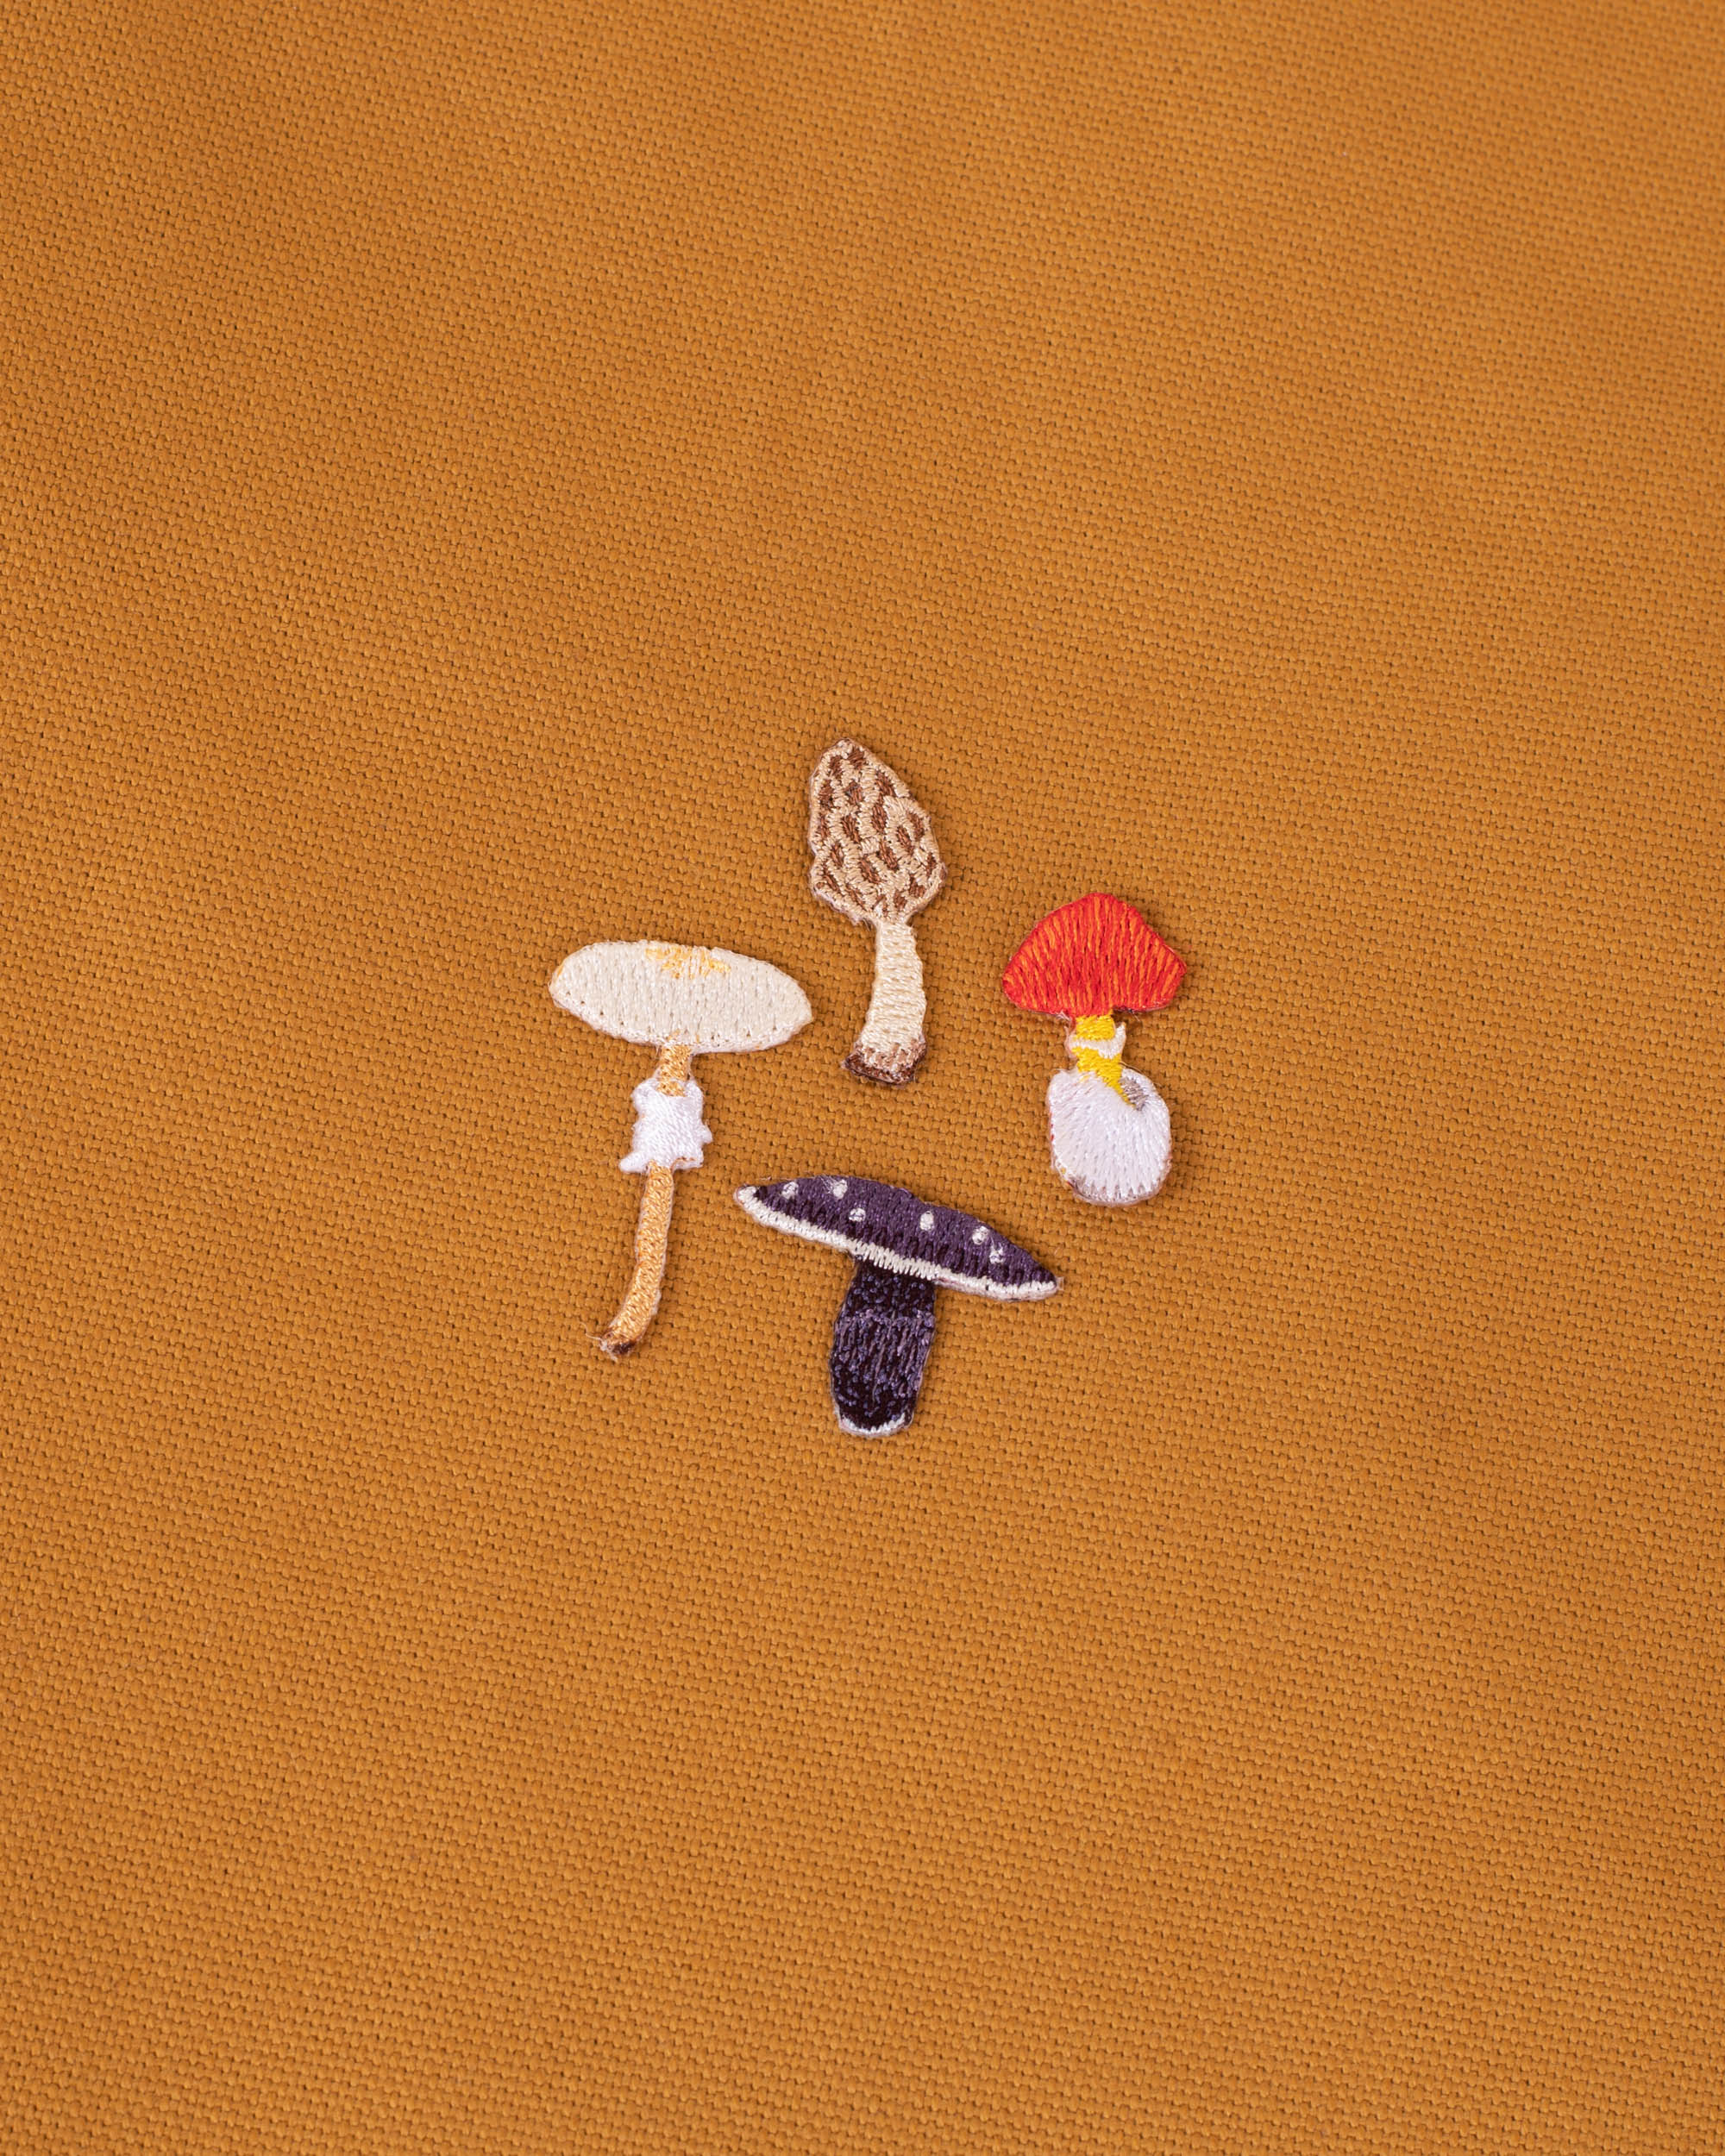 MINI PATCHES -  4 Mushrooms